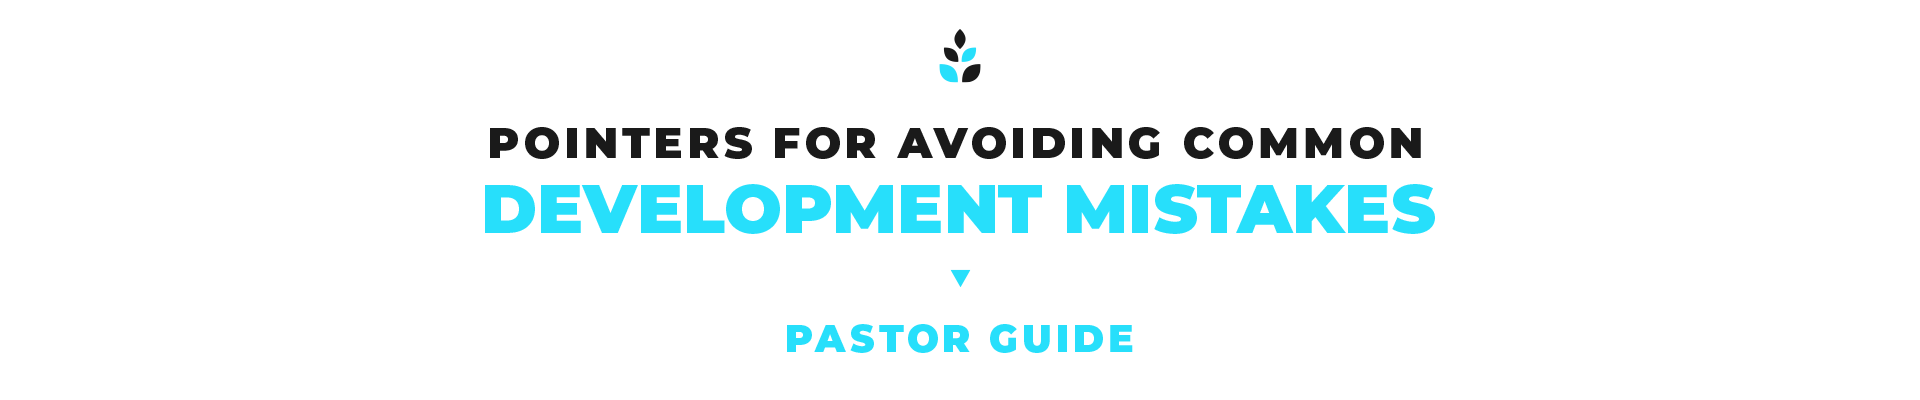 pointers for avoiding common development mistakes pastor guide